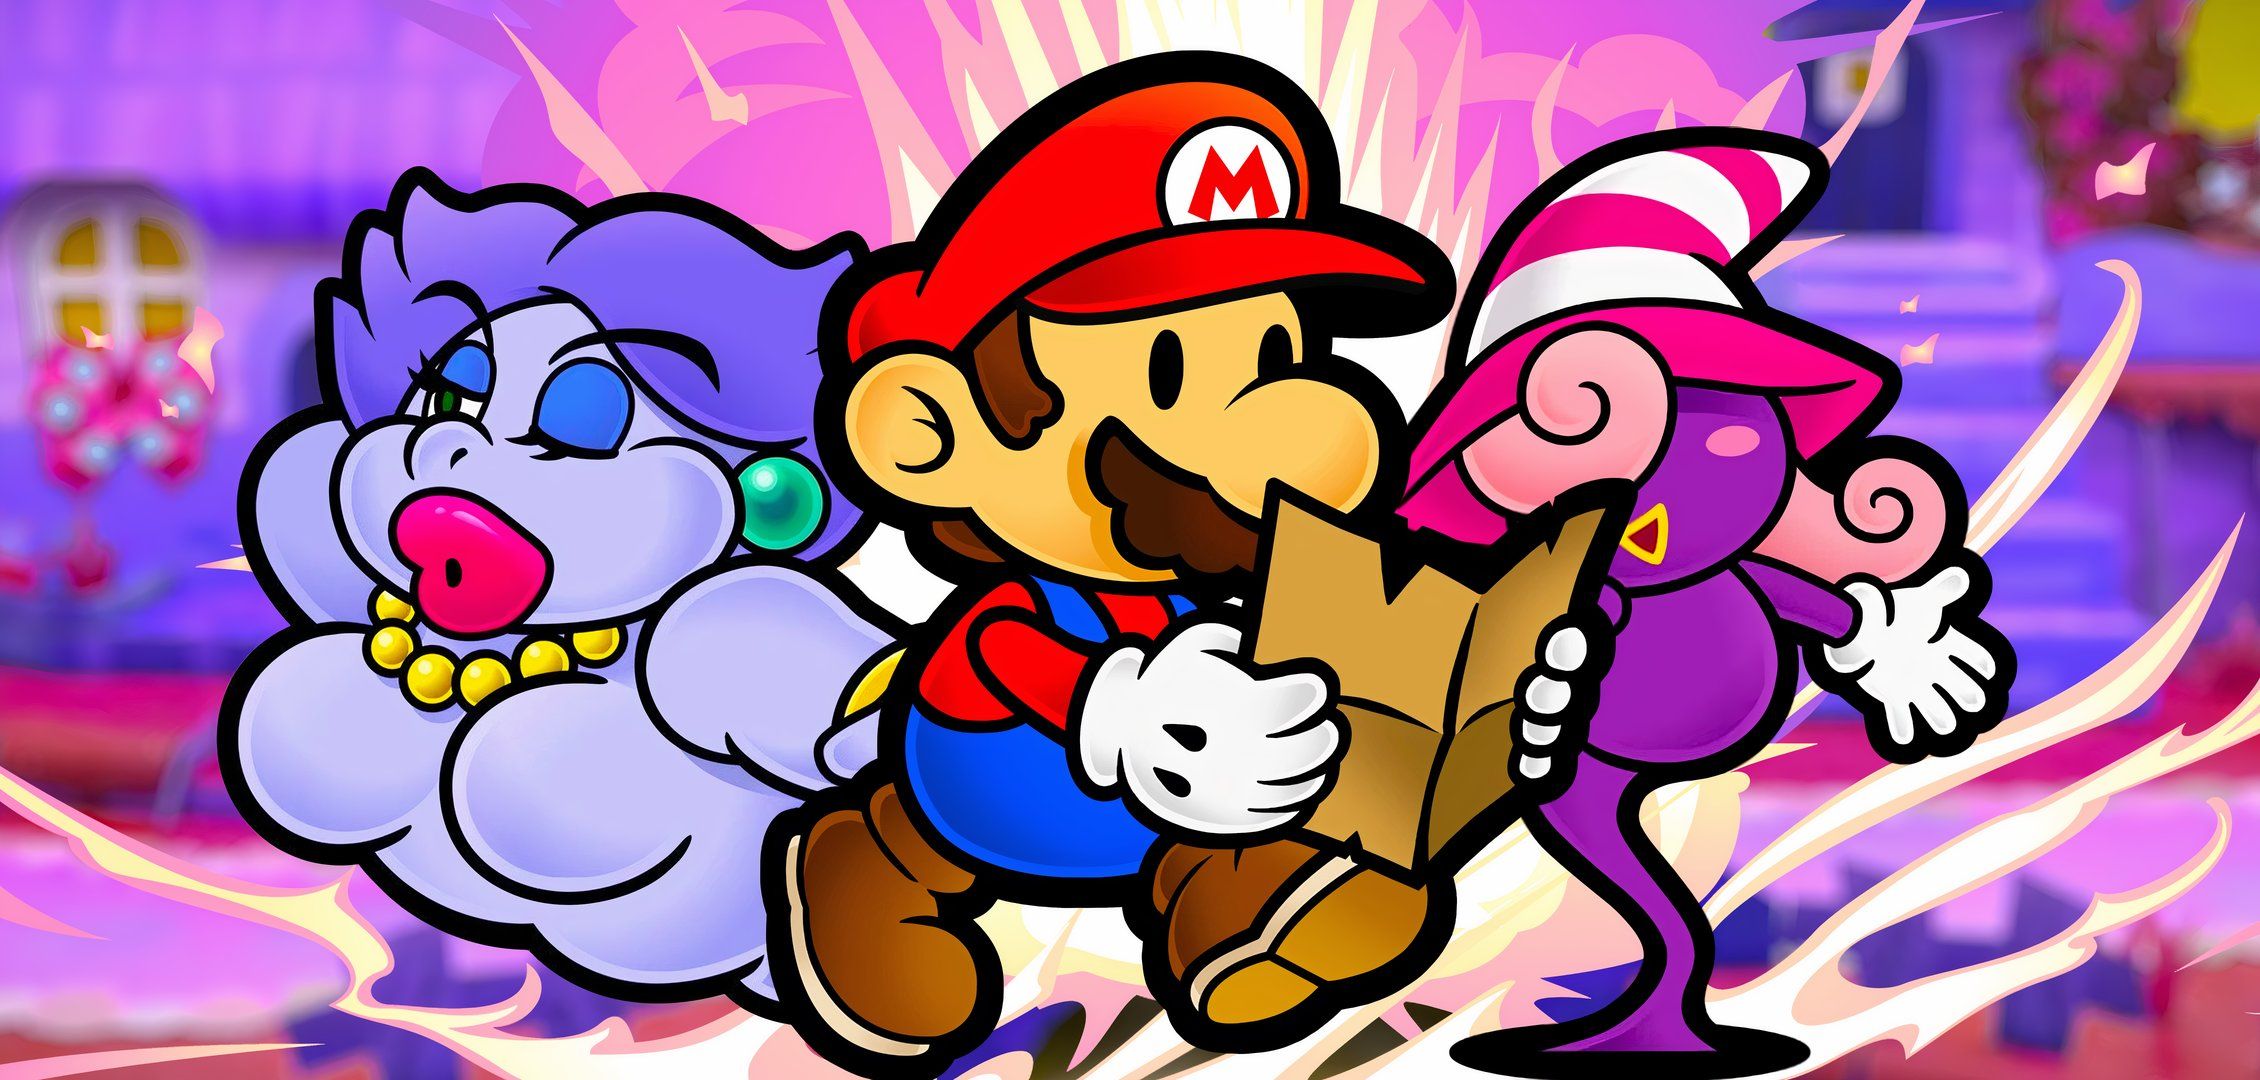 Every Paper Mario: тысячелетний дверной партнер, от худшего к лучшему